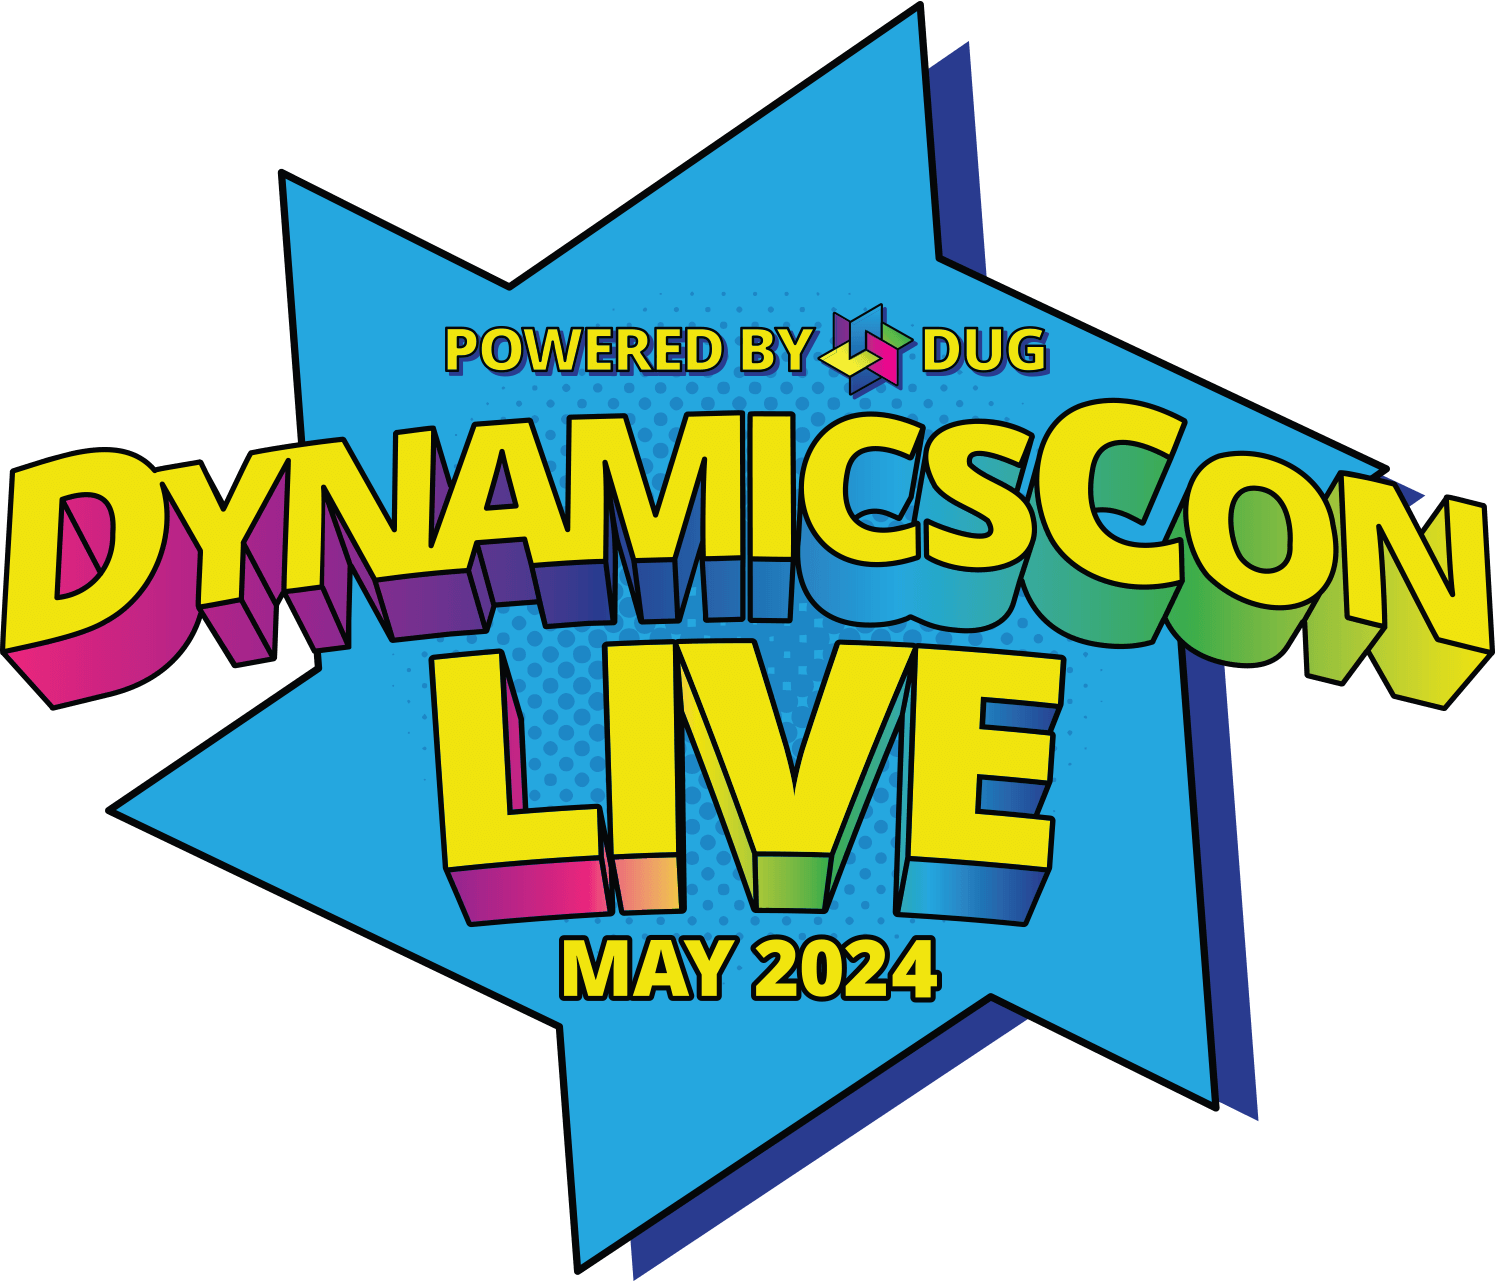 DYNAMICSCON LIVE 2024 Logo Color